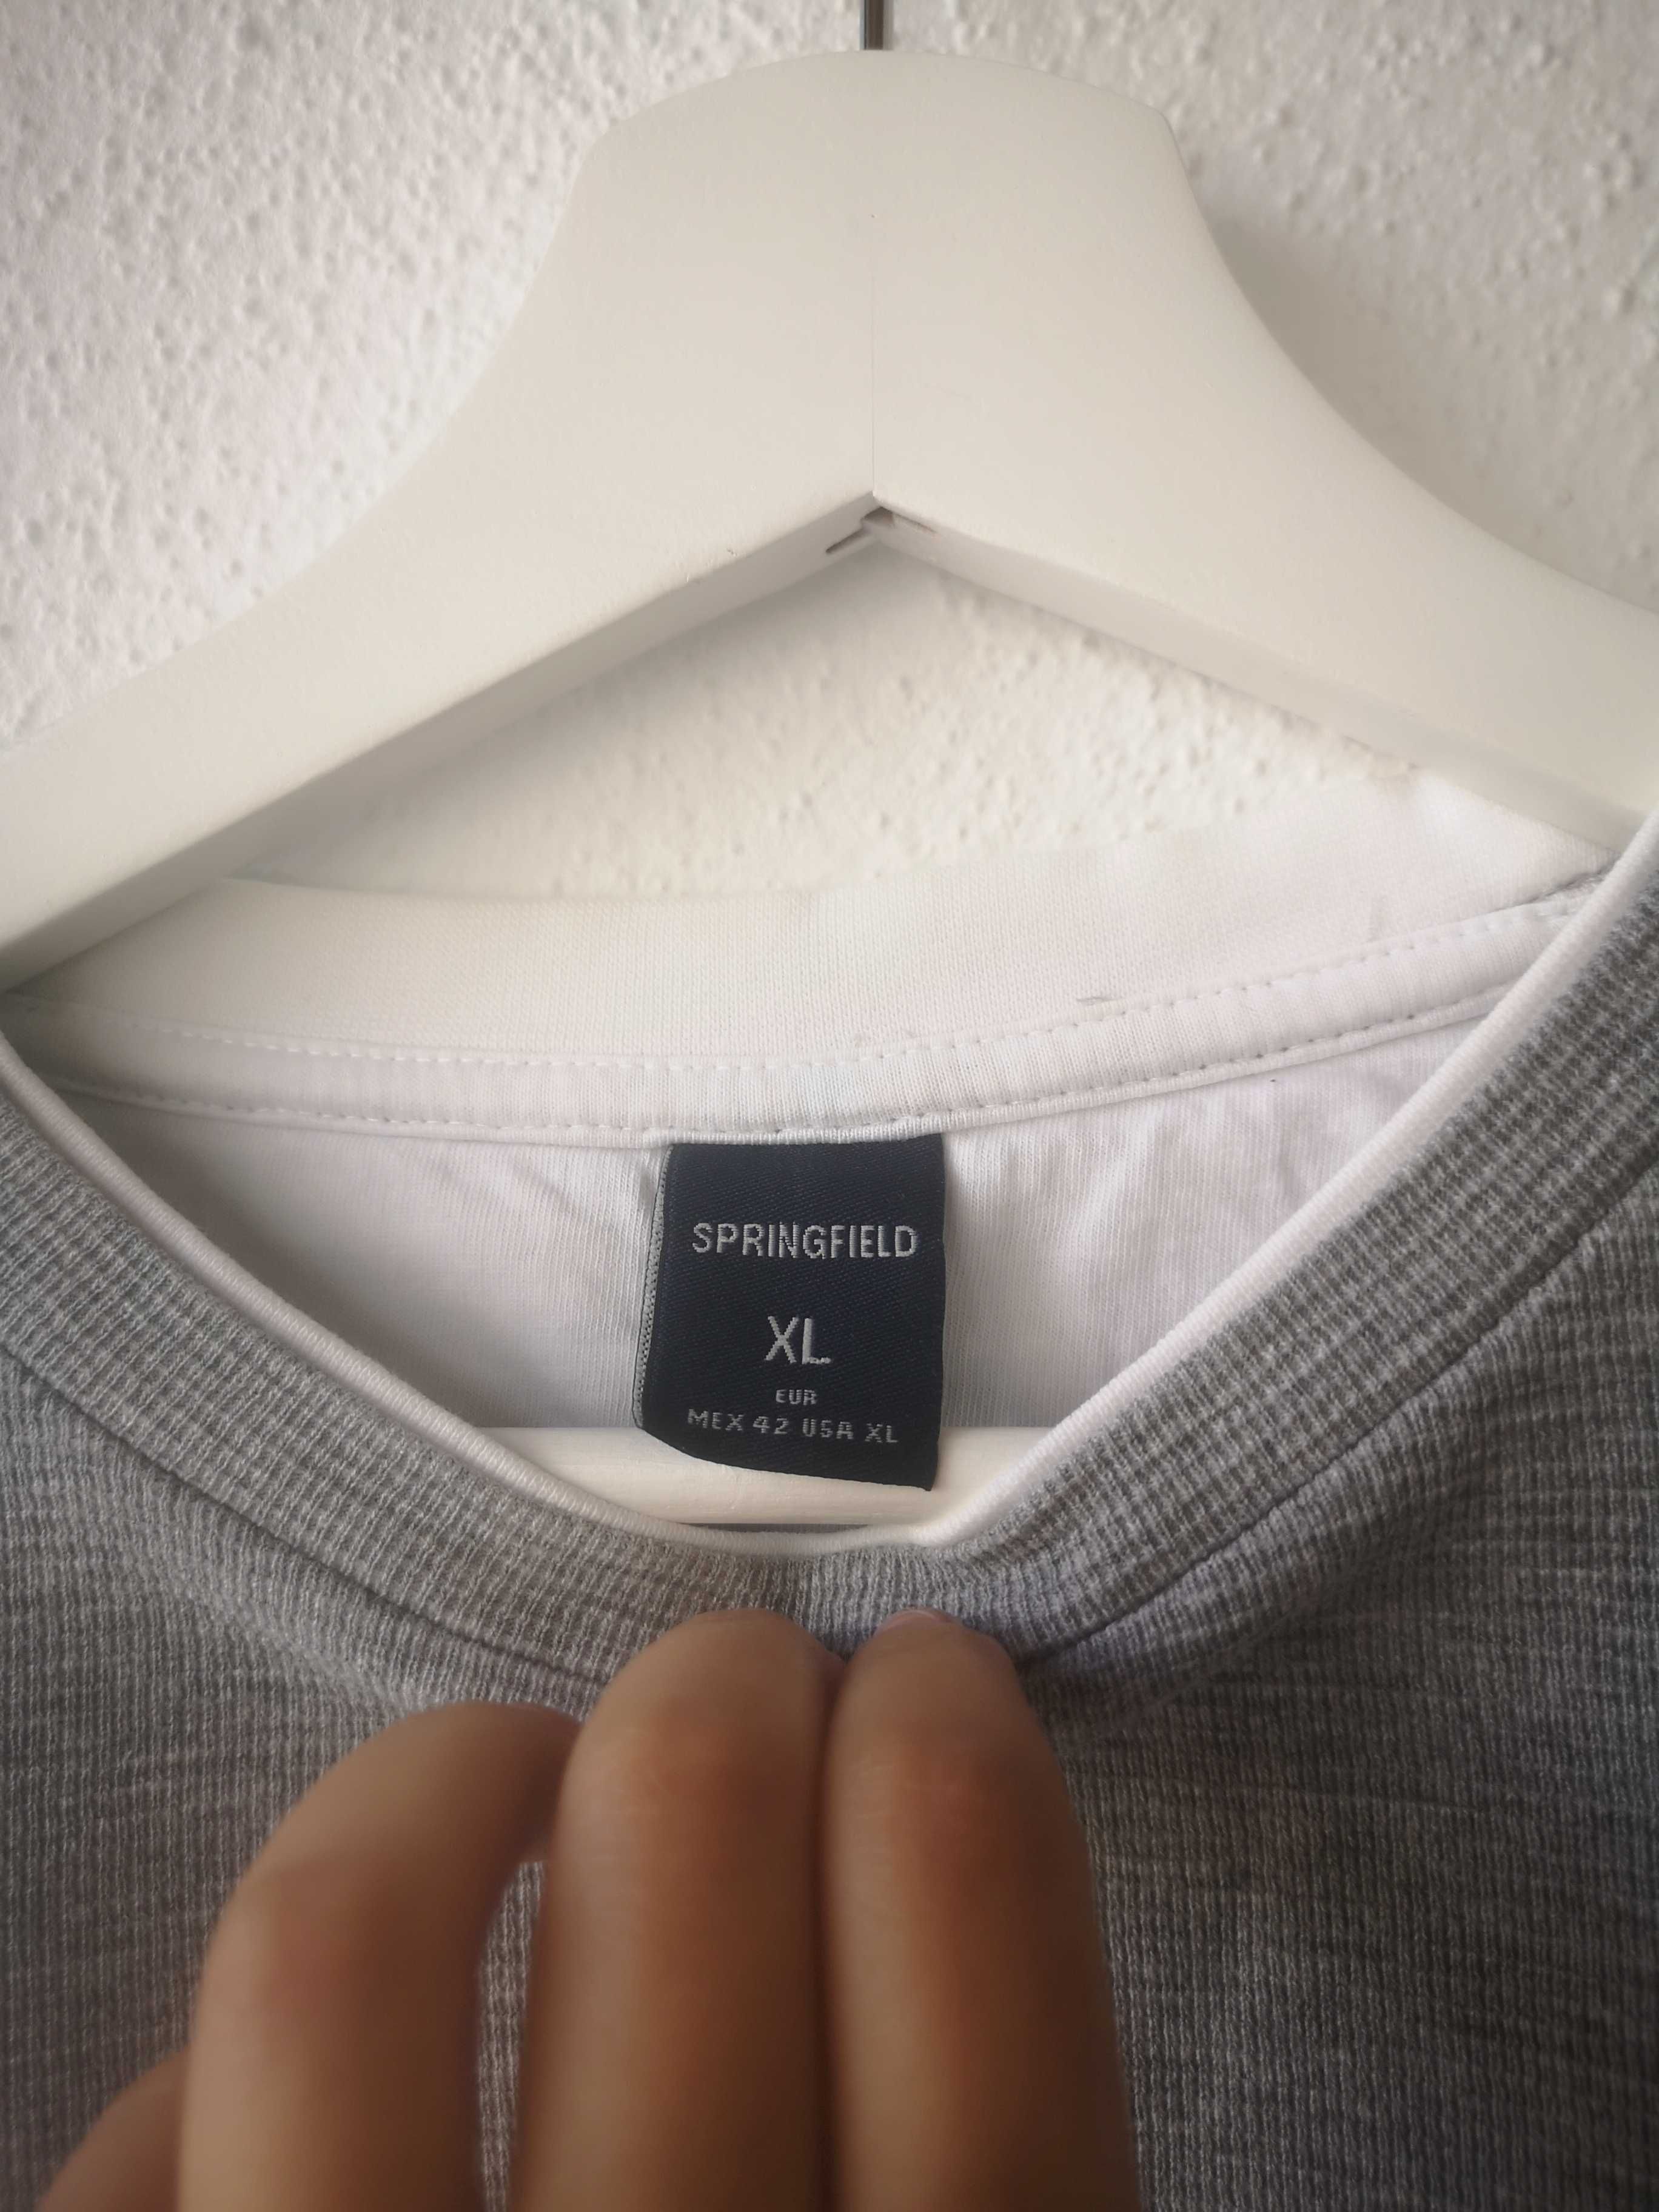 Camisola cinzenta em algodão da Springfield, tamanho XL